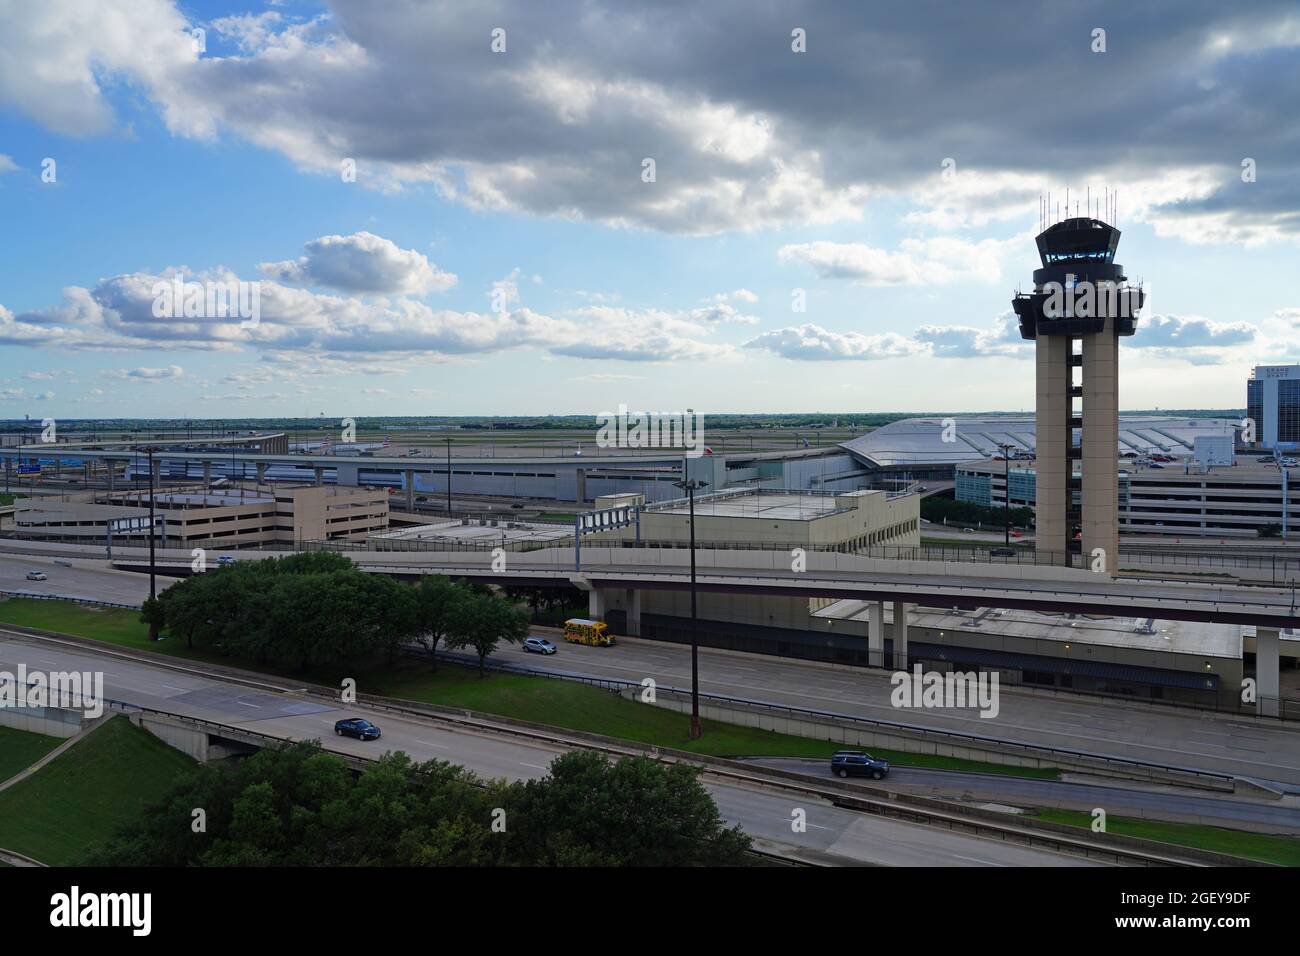 DALLAS, TX - 17. MAI 2021 - Blick auf den Kontrollturm am Dallas/Fort Worth International Airport (DFW), dem größten Drehkreuz von American Airlines (AA). Stockfoto